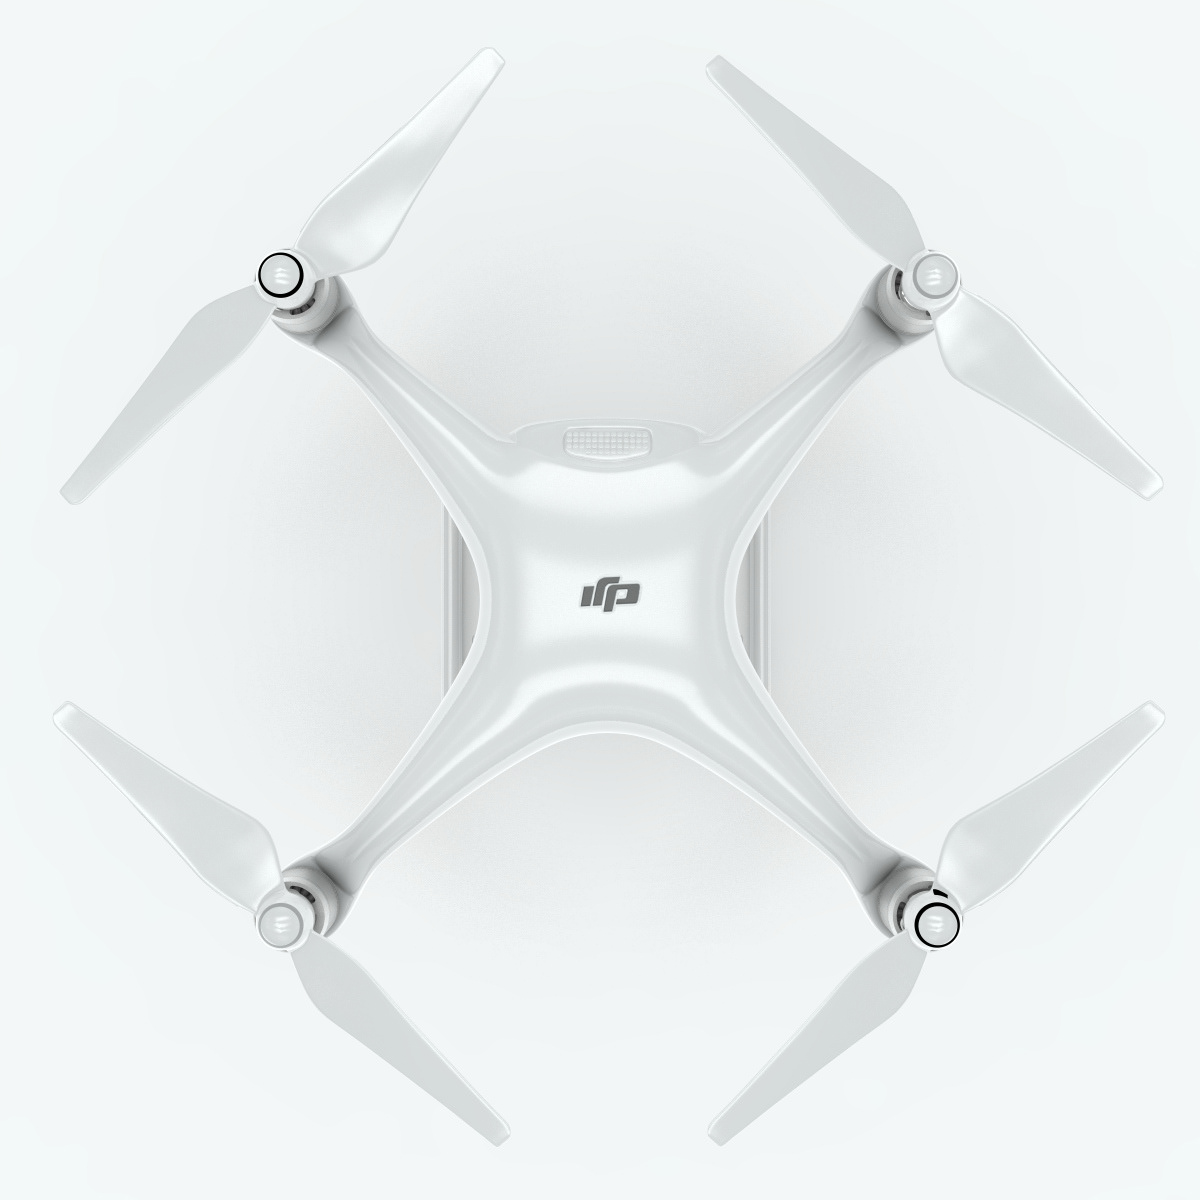 DJI Phantom 4 raw quadcopter camera drone Aircraft Copter air Inspire 1 Pro